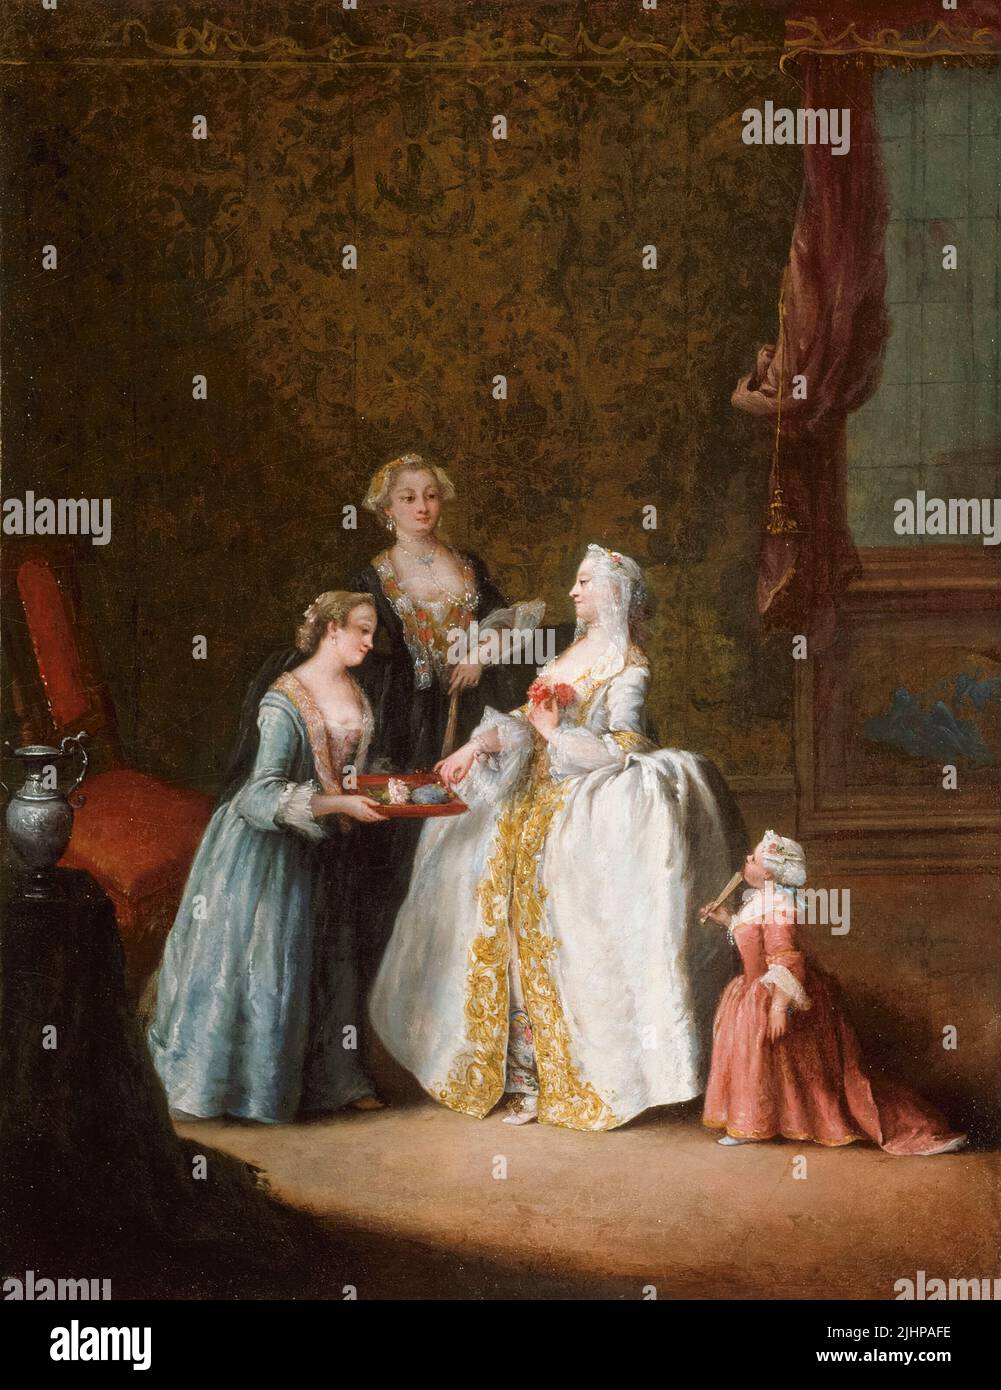 Pietro Longhi, Lady at Her Toilette, peinture à l'huile sur toile, 1745-1749 Banque D'Images